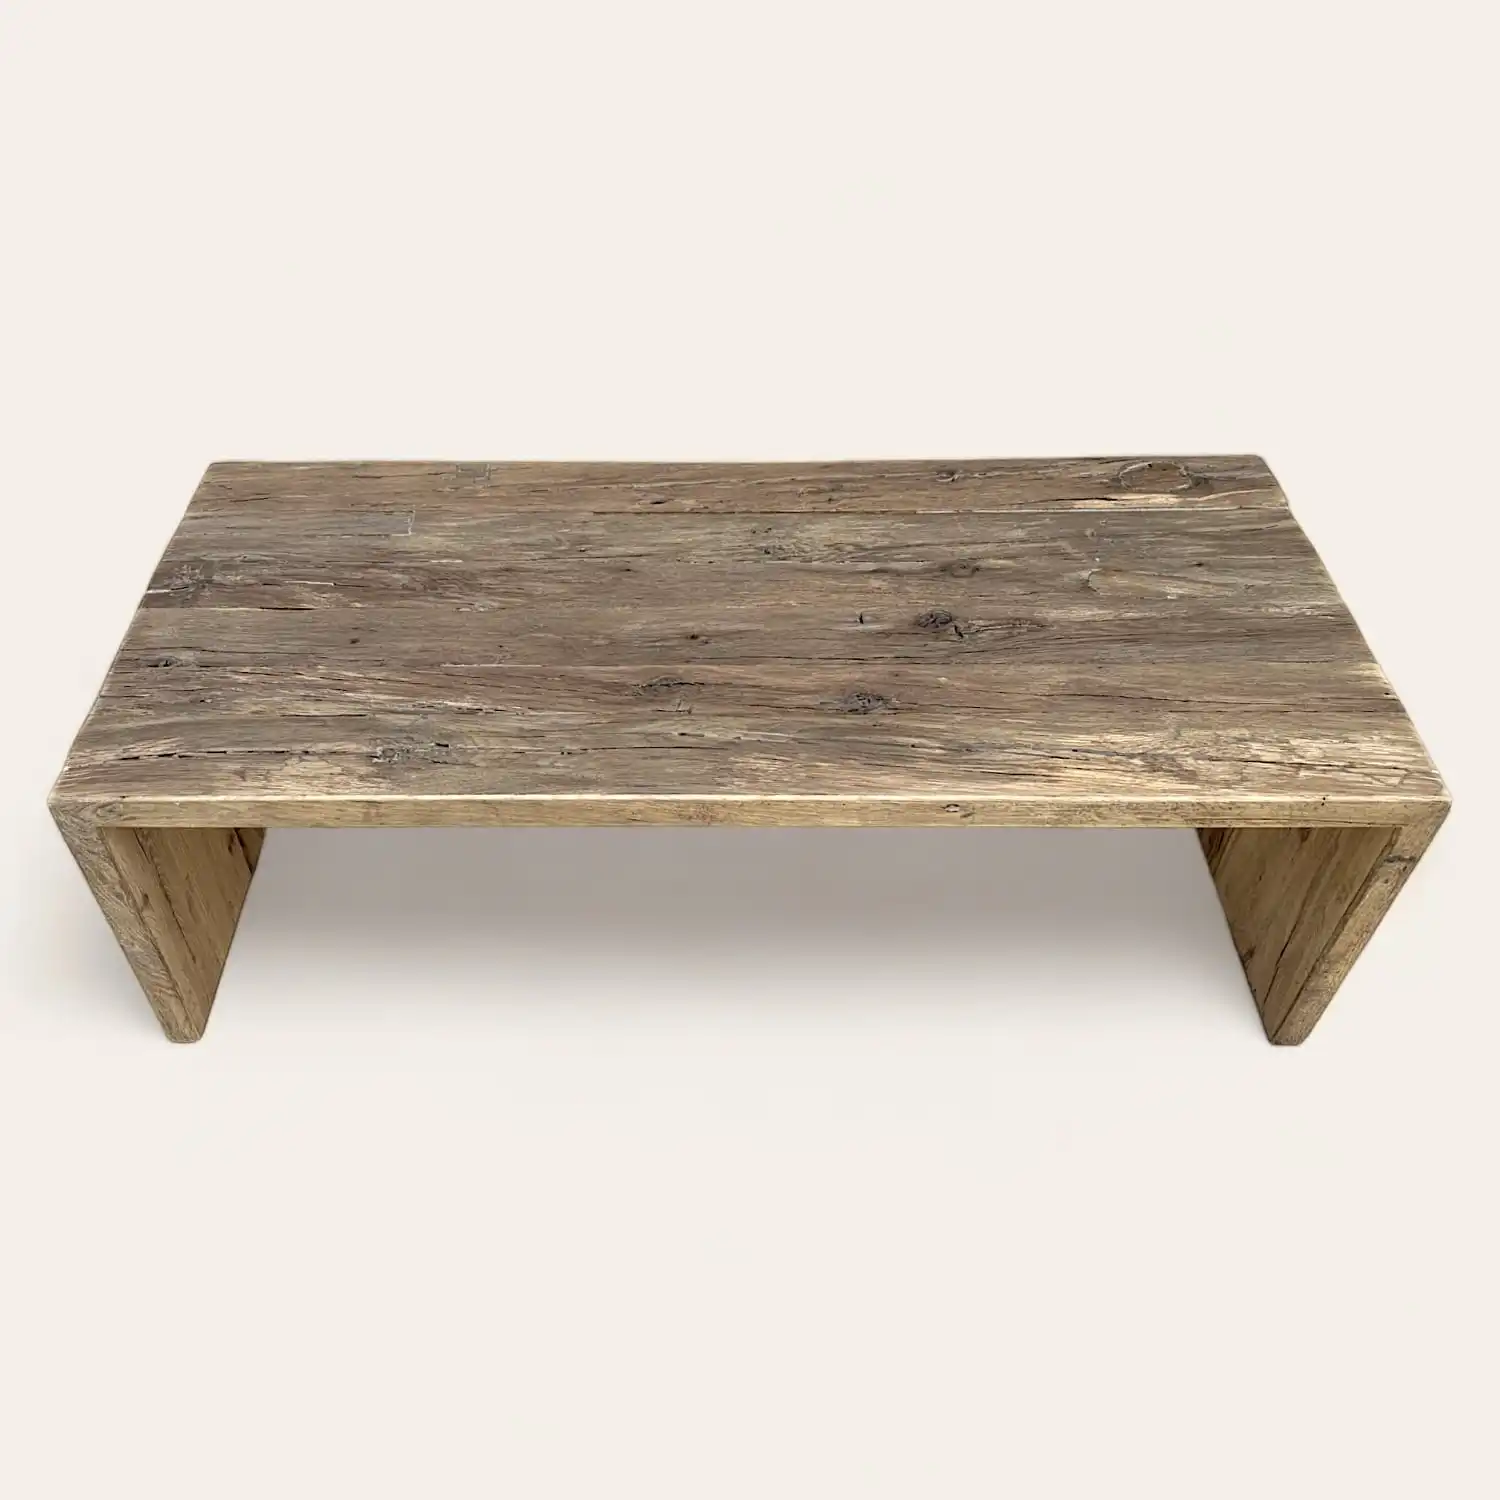  Une table basse en bois ancien avec un piètement en bois. 